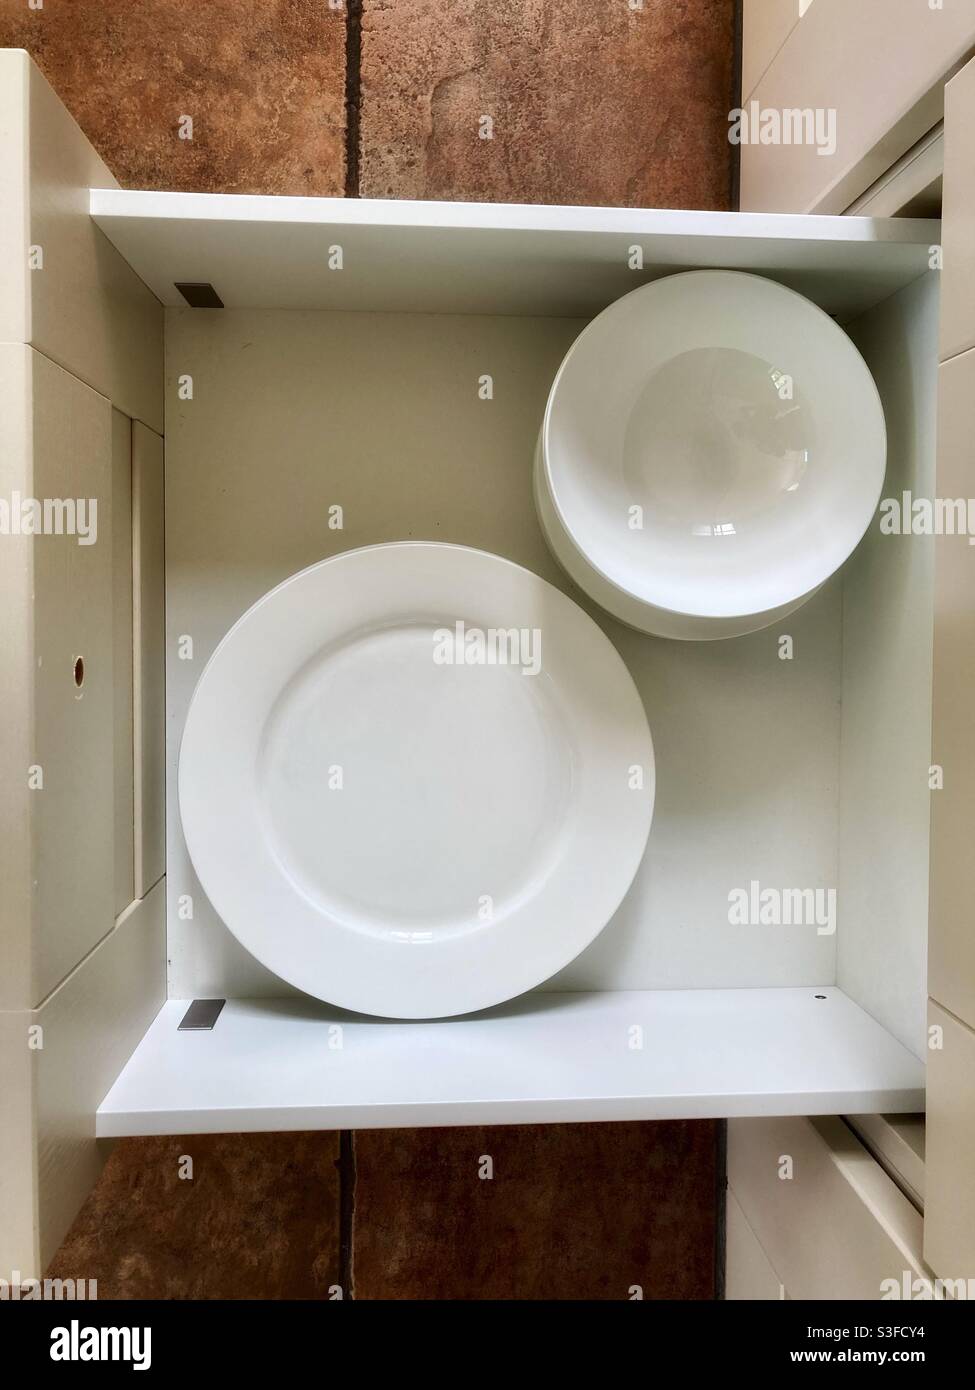 Teller-Schublade mit weißen Tellern und Schüsseln von oben - Geschirr Stockfoto